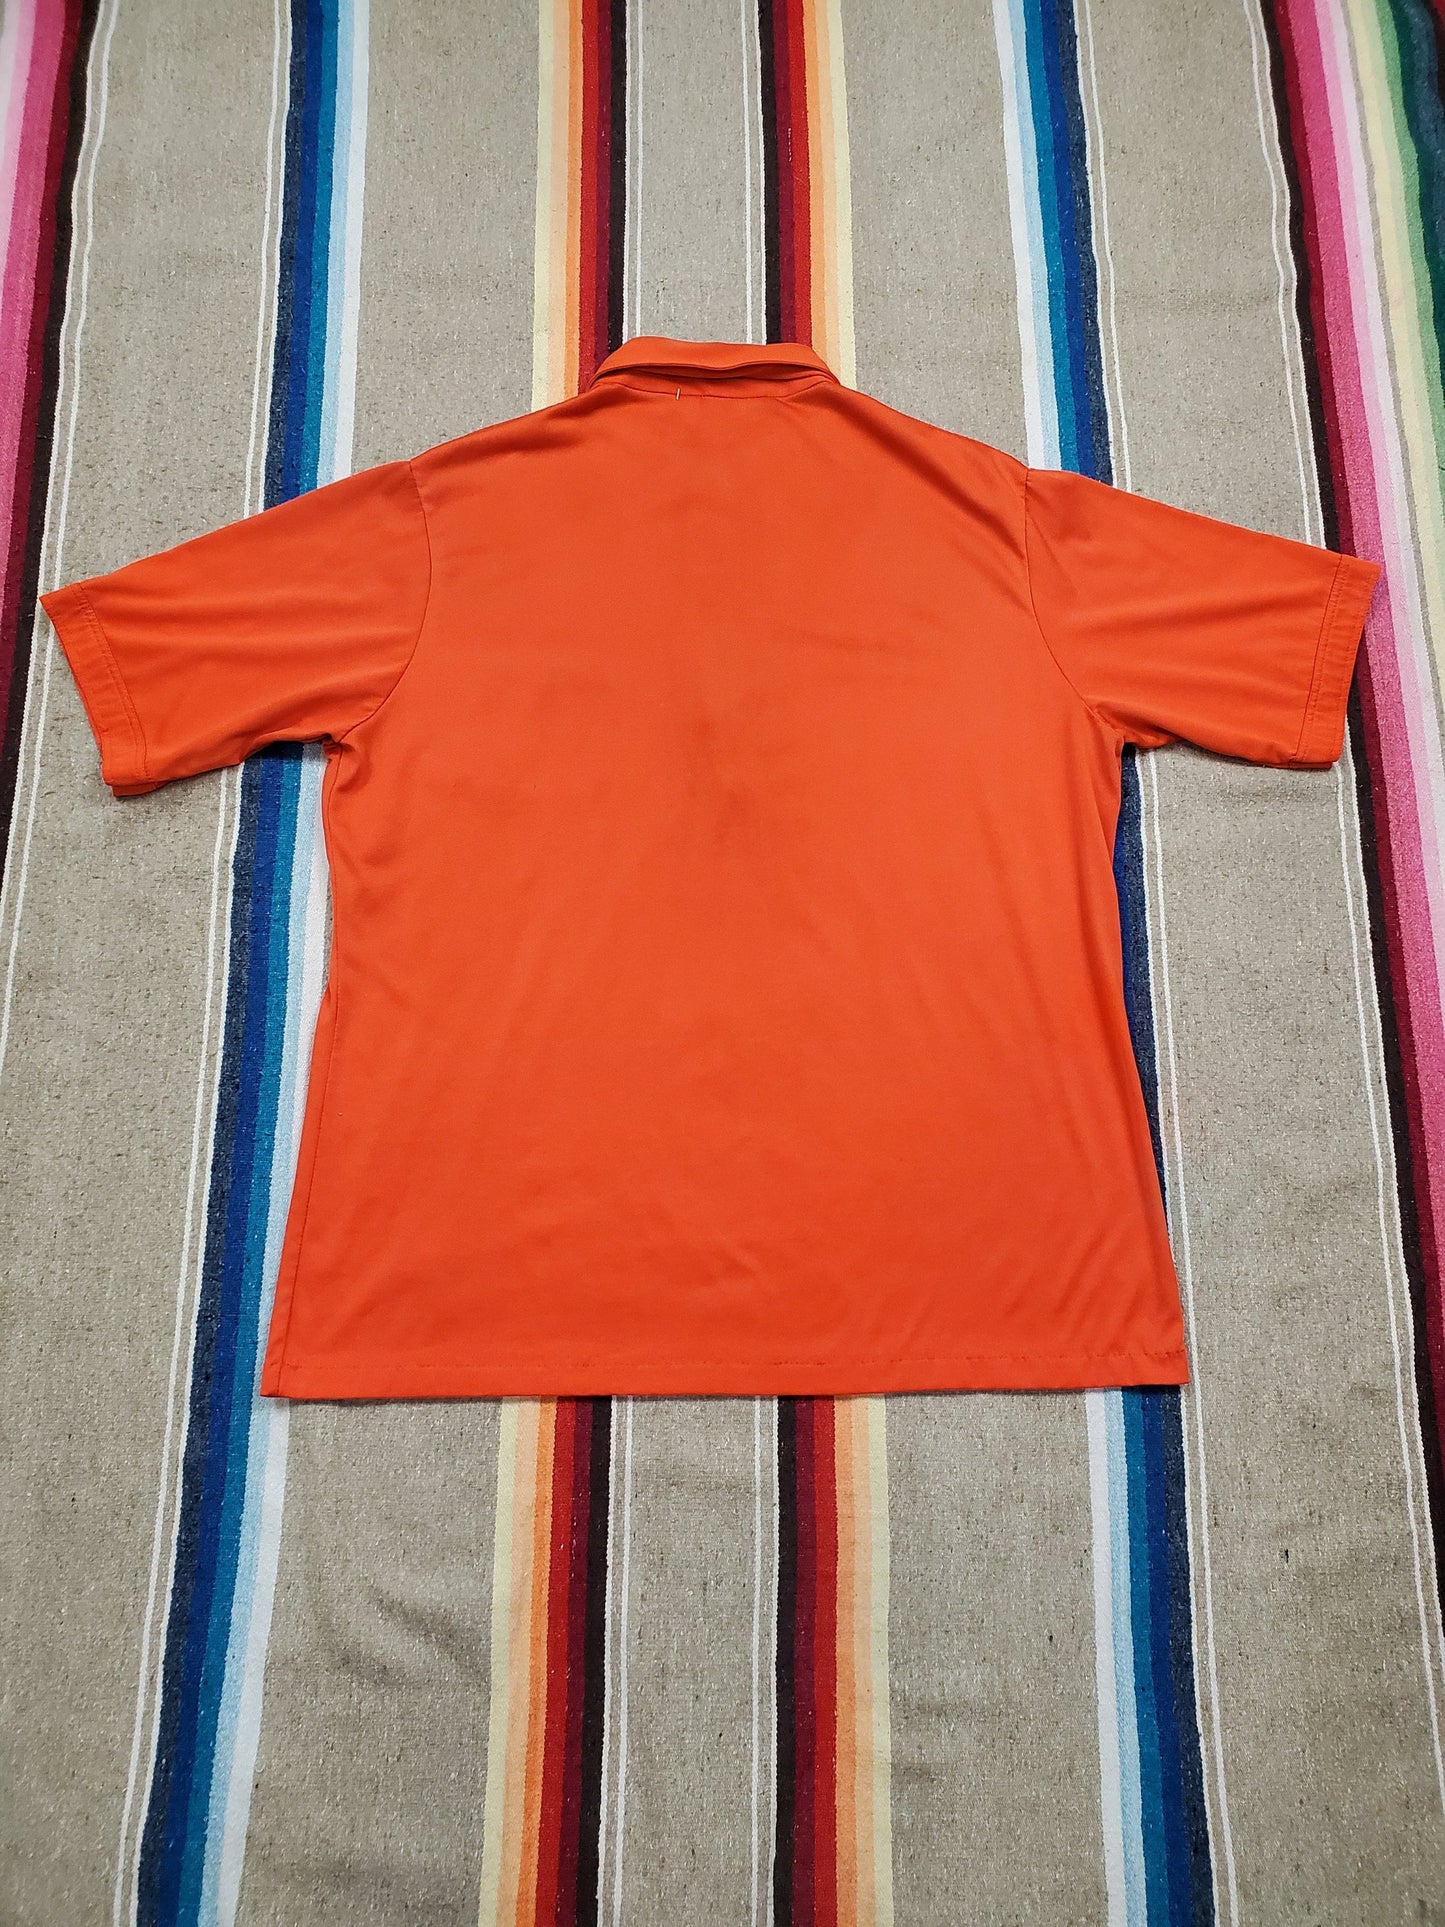 1980s Nologo by Tonix Syracuse Orange Pack Jazz Band Polo Shirt Size L